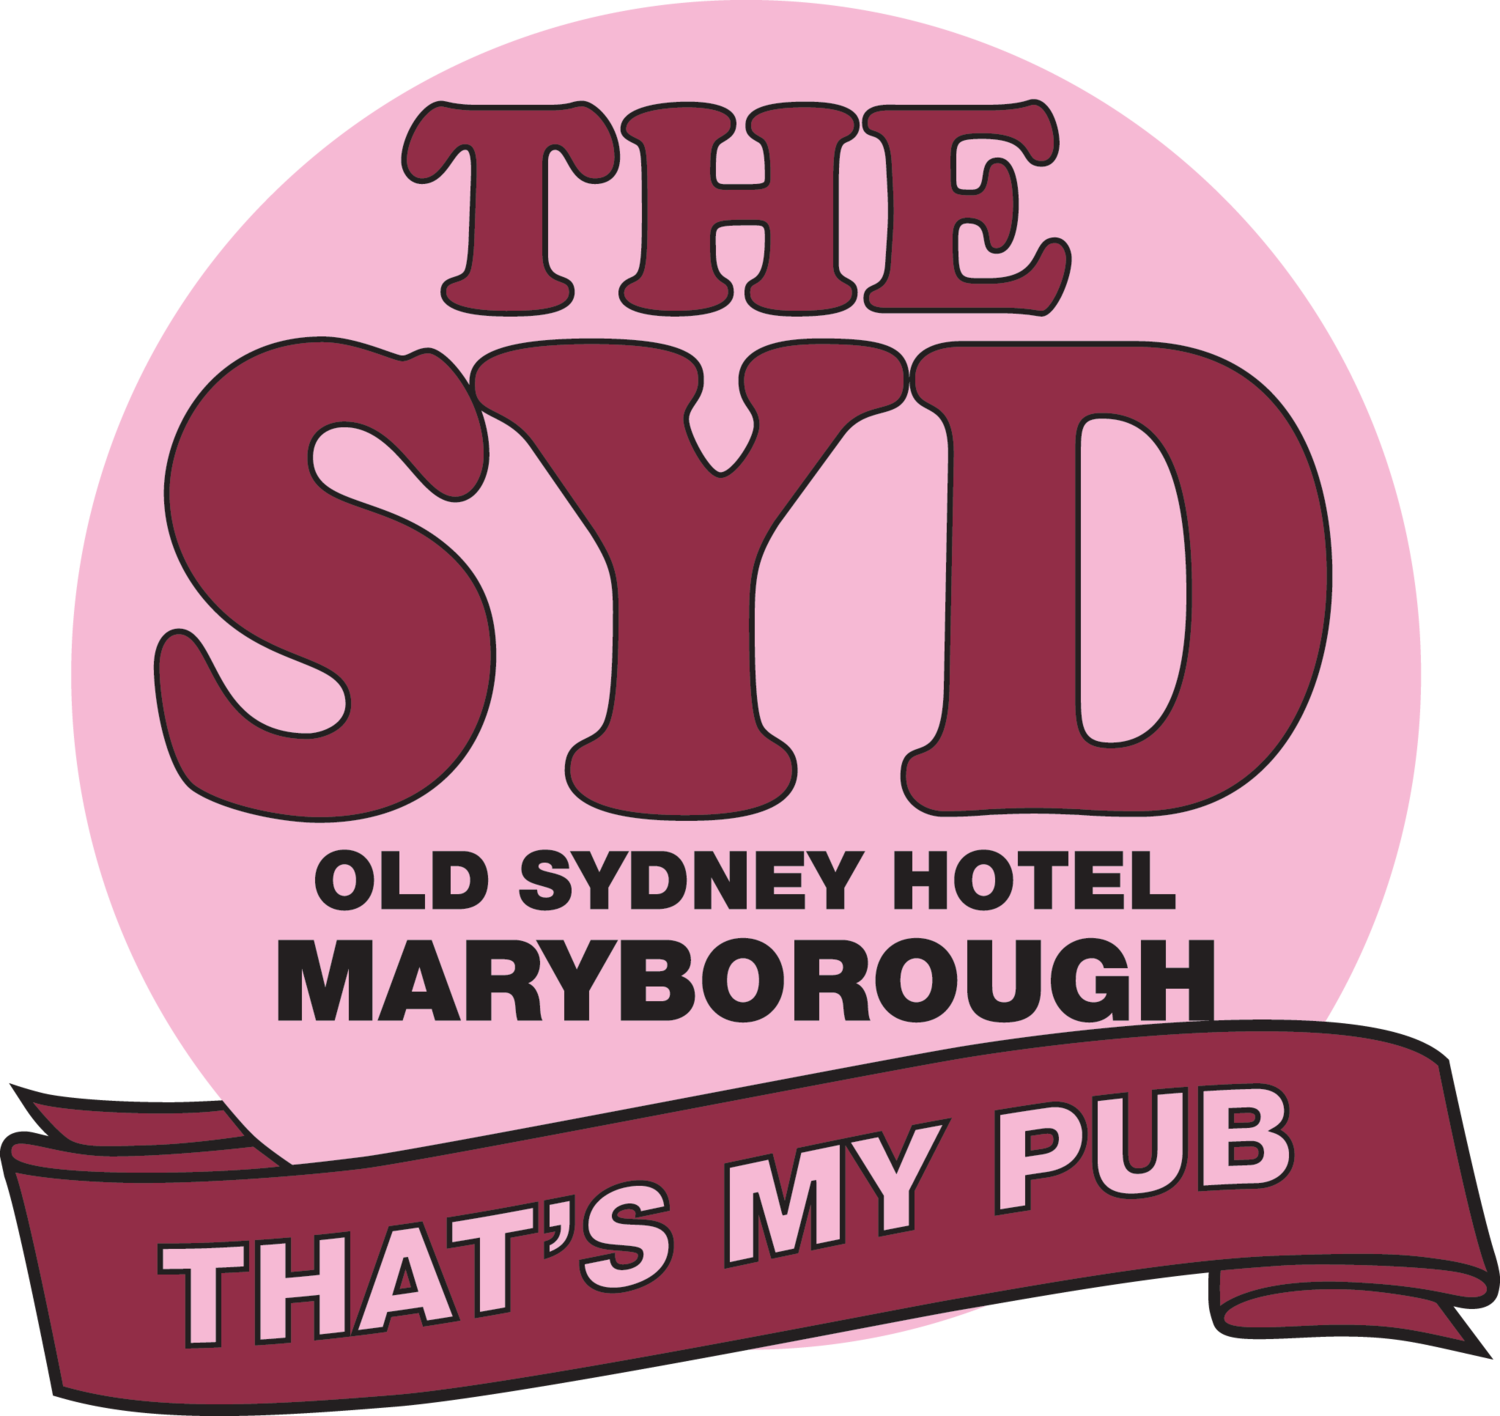 Old Sydney Hotel, Maryborough, QLD